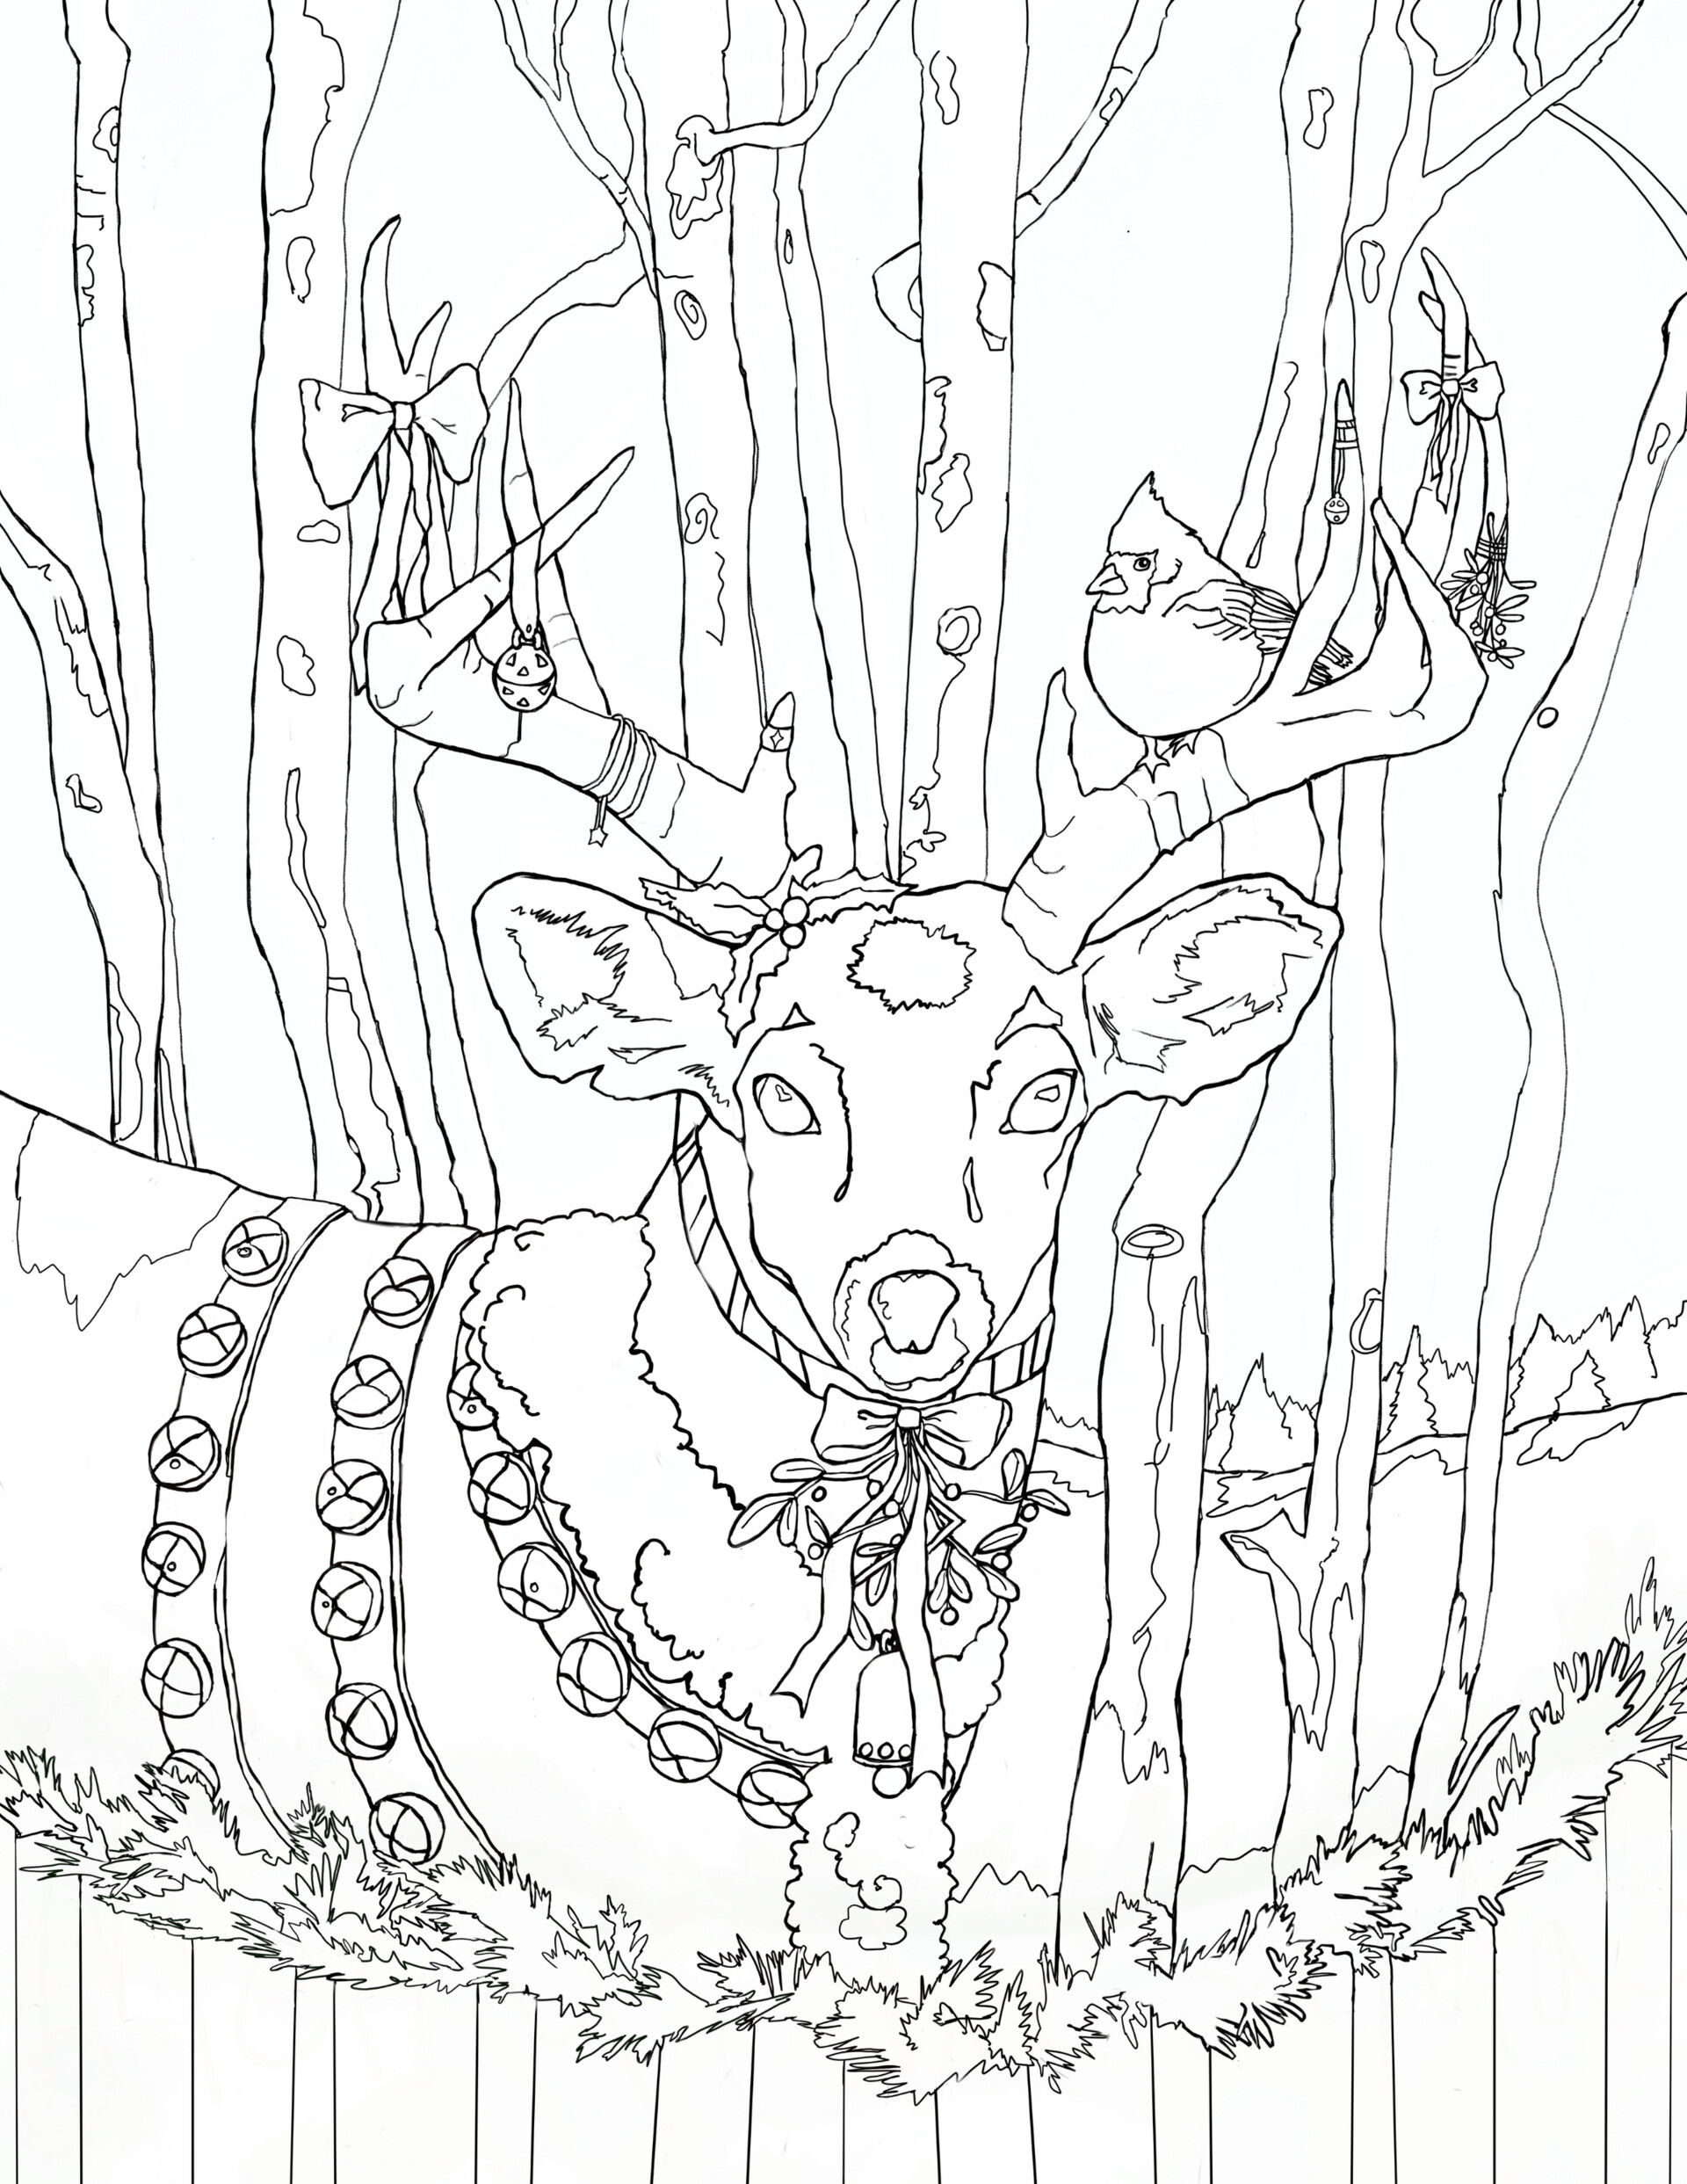 ArtStation - Christmas Coloring Page, Reindeer in Winter Wonderland